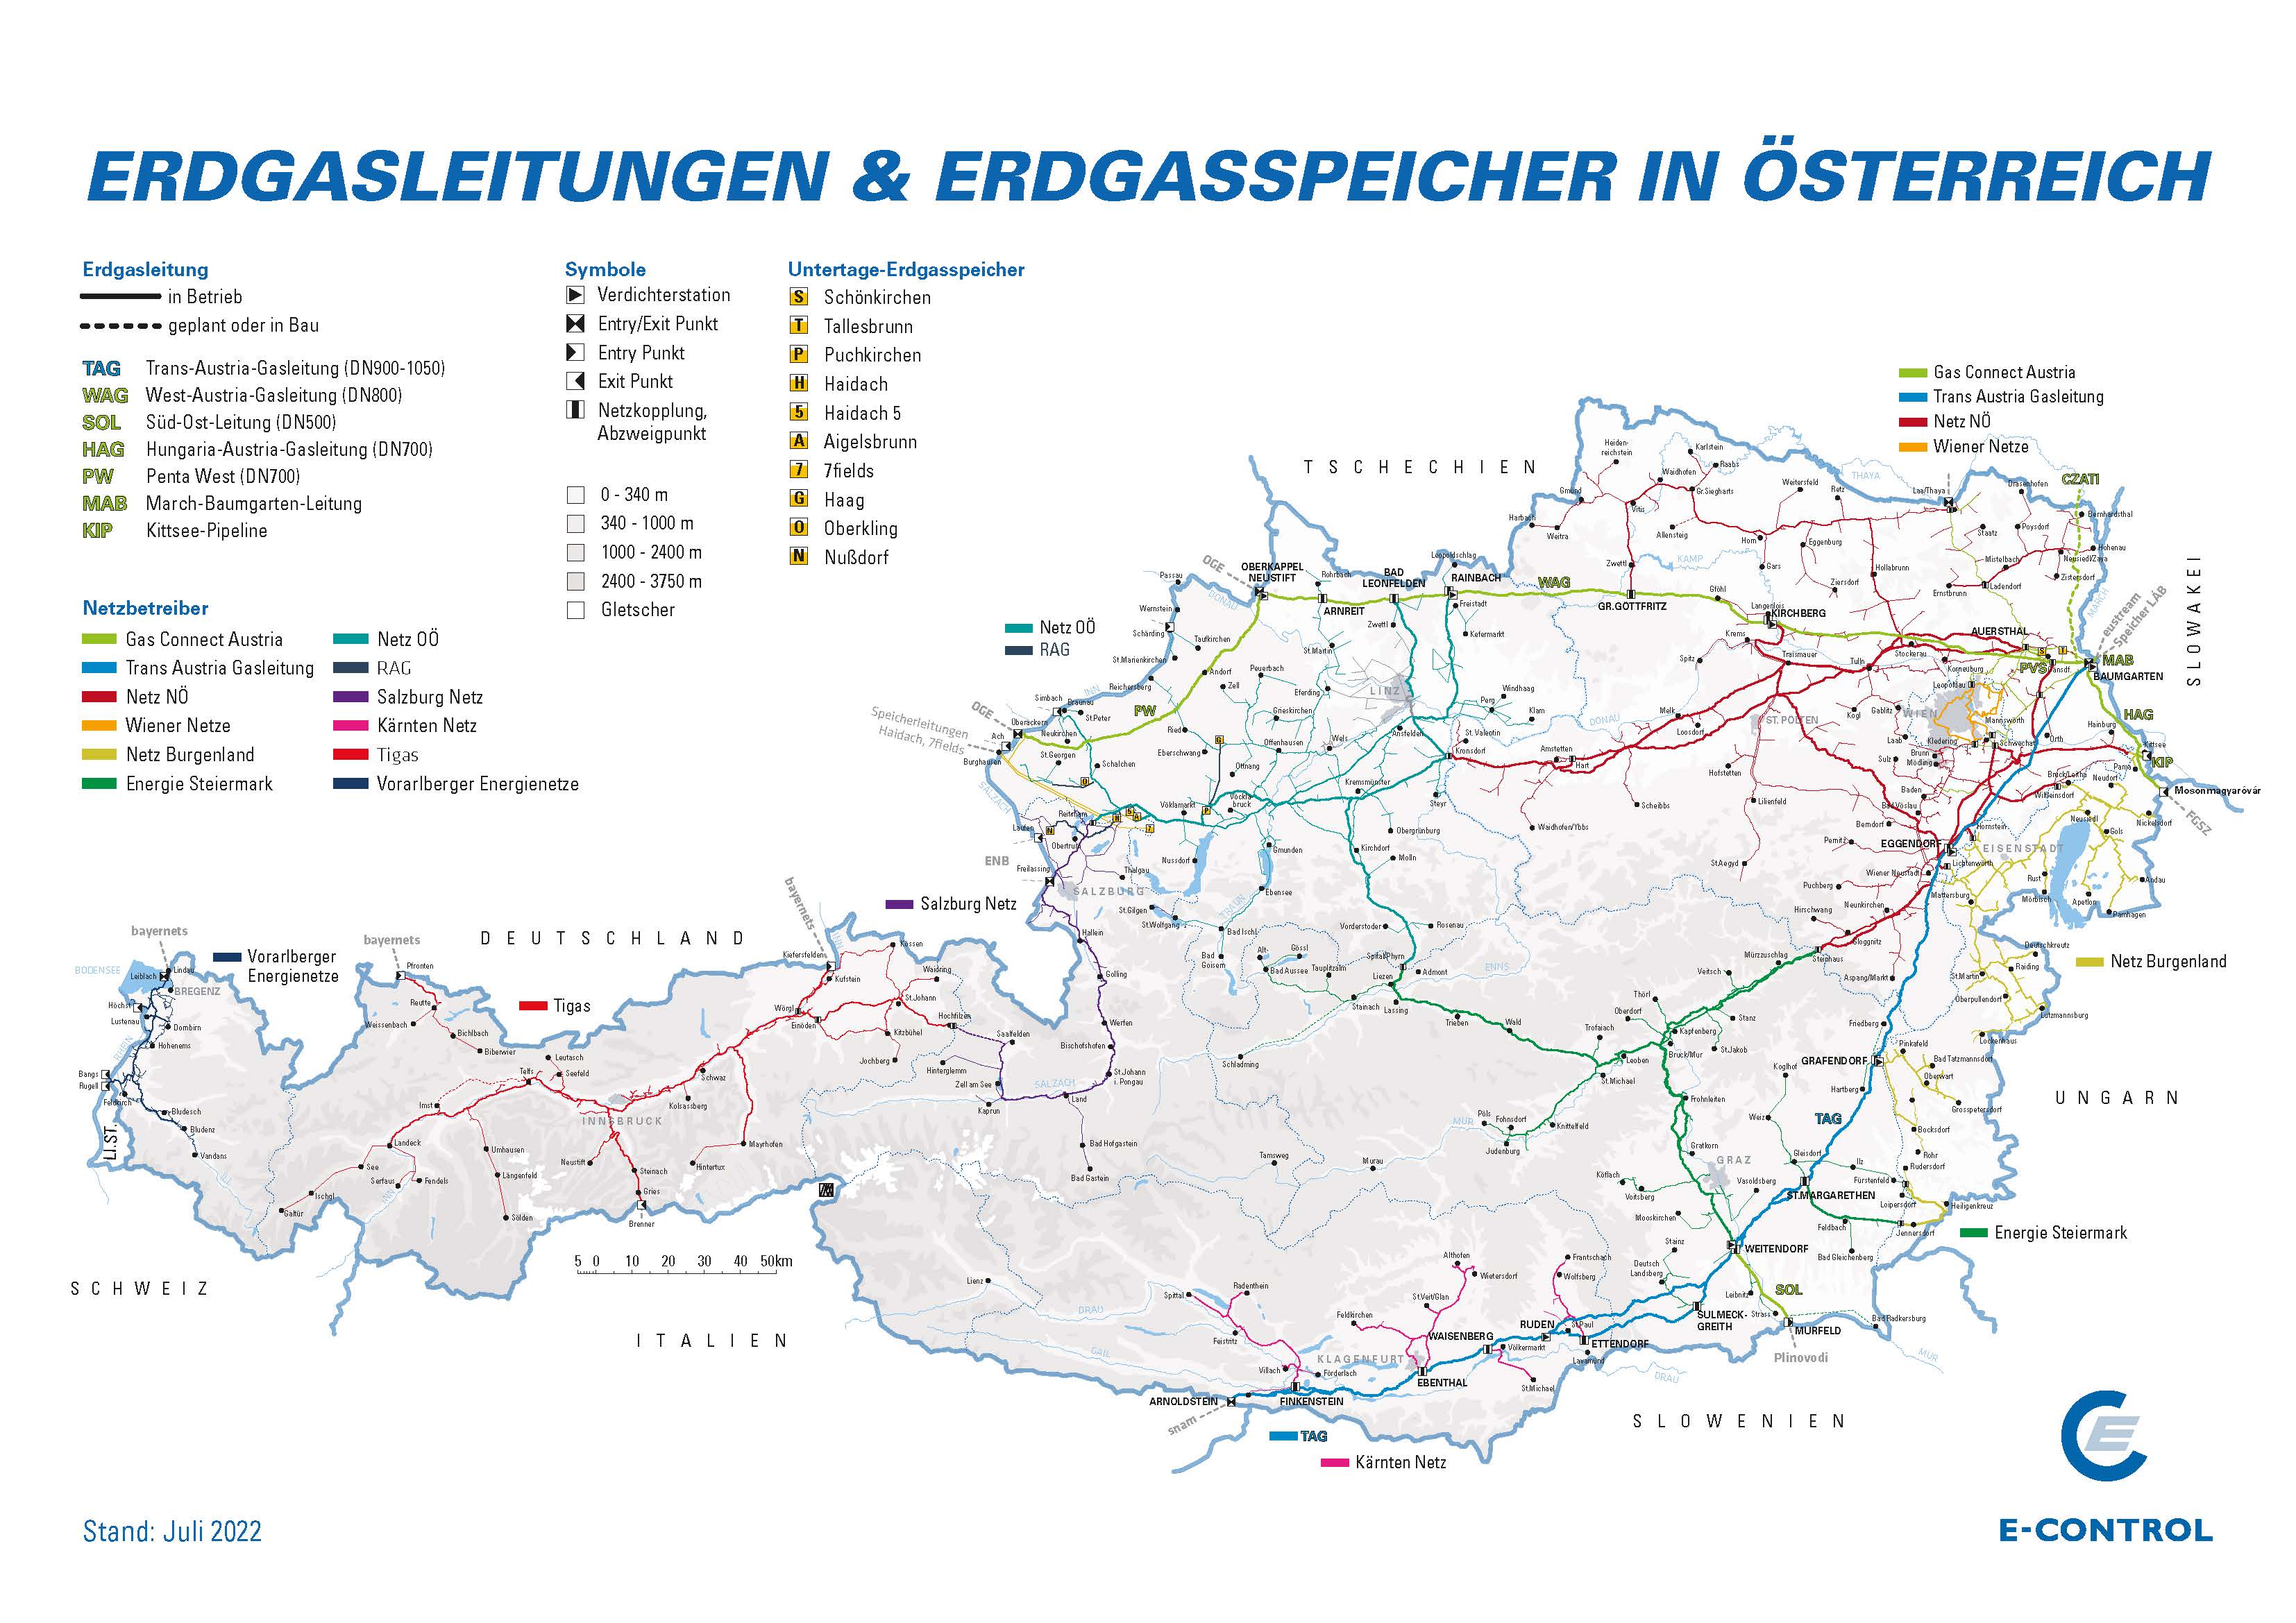 Erdgasleitungen & Erdgasspeicher in Österreich, Stand Juli 2022